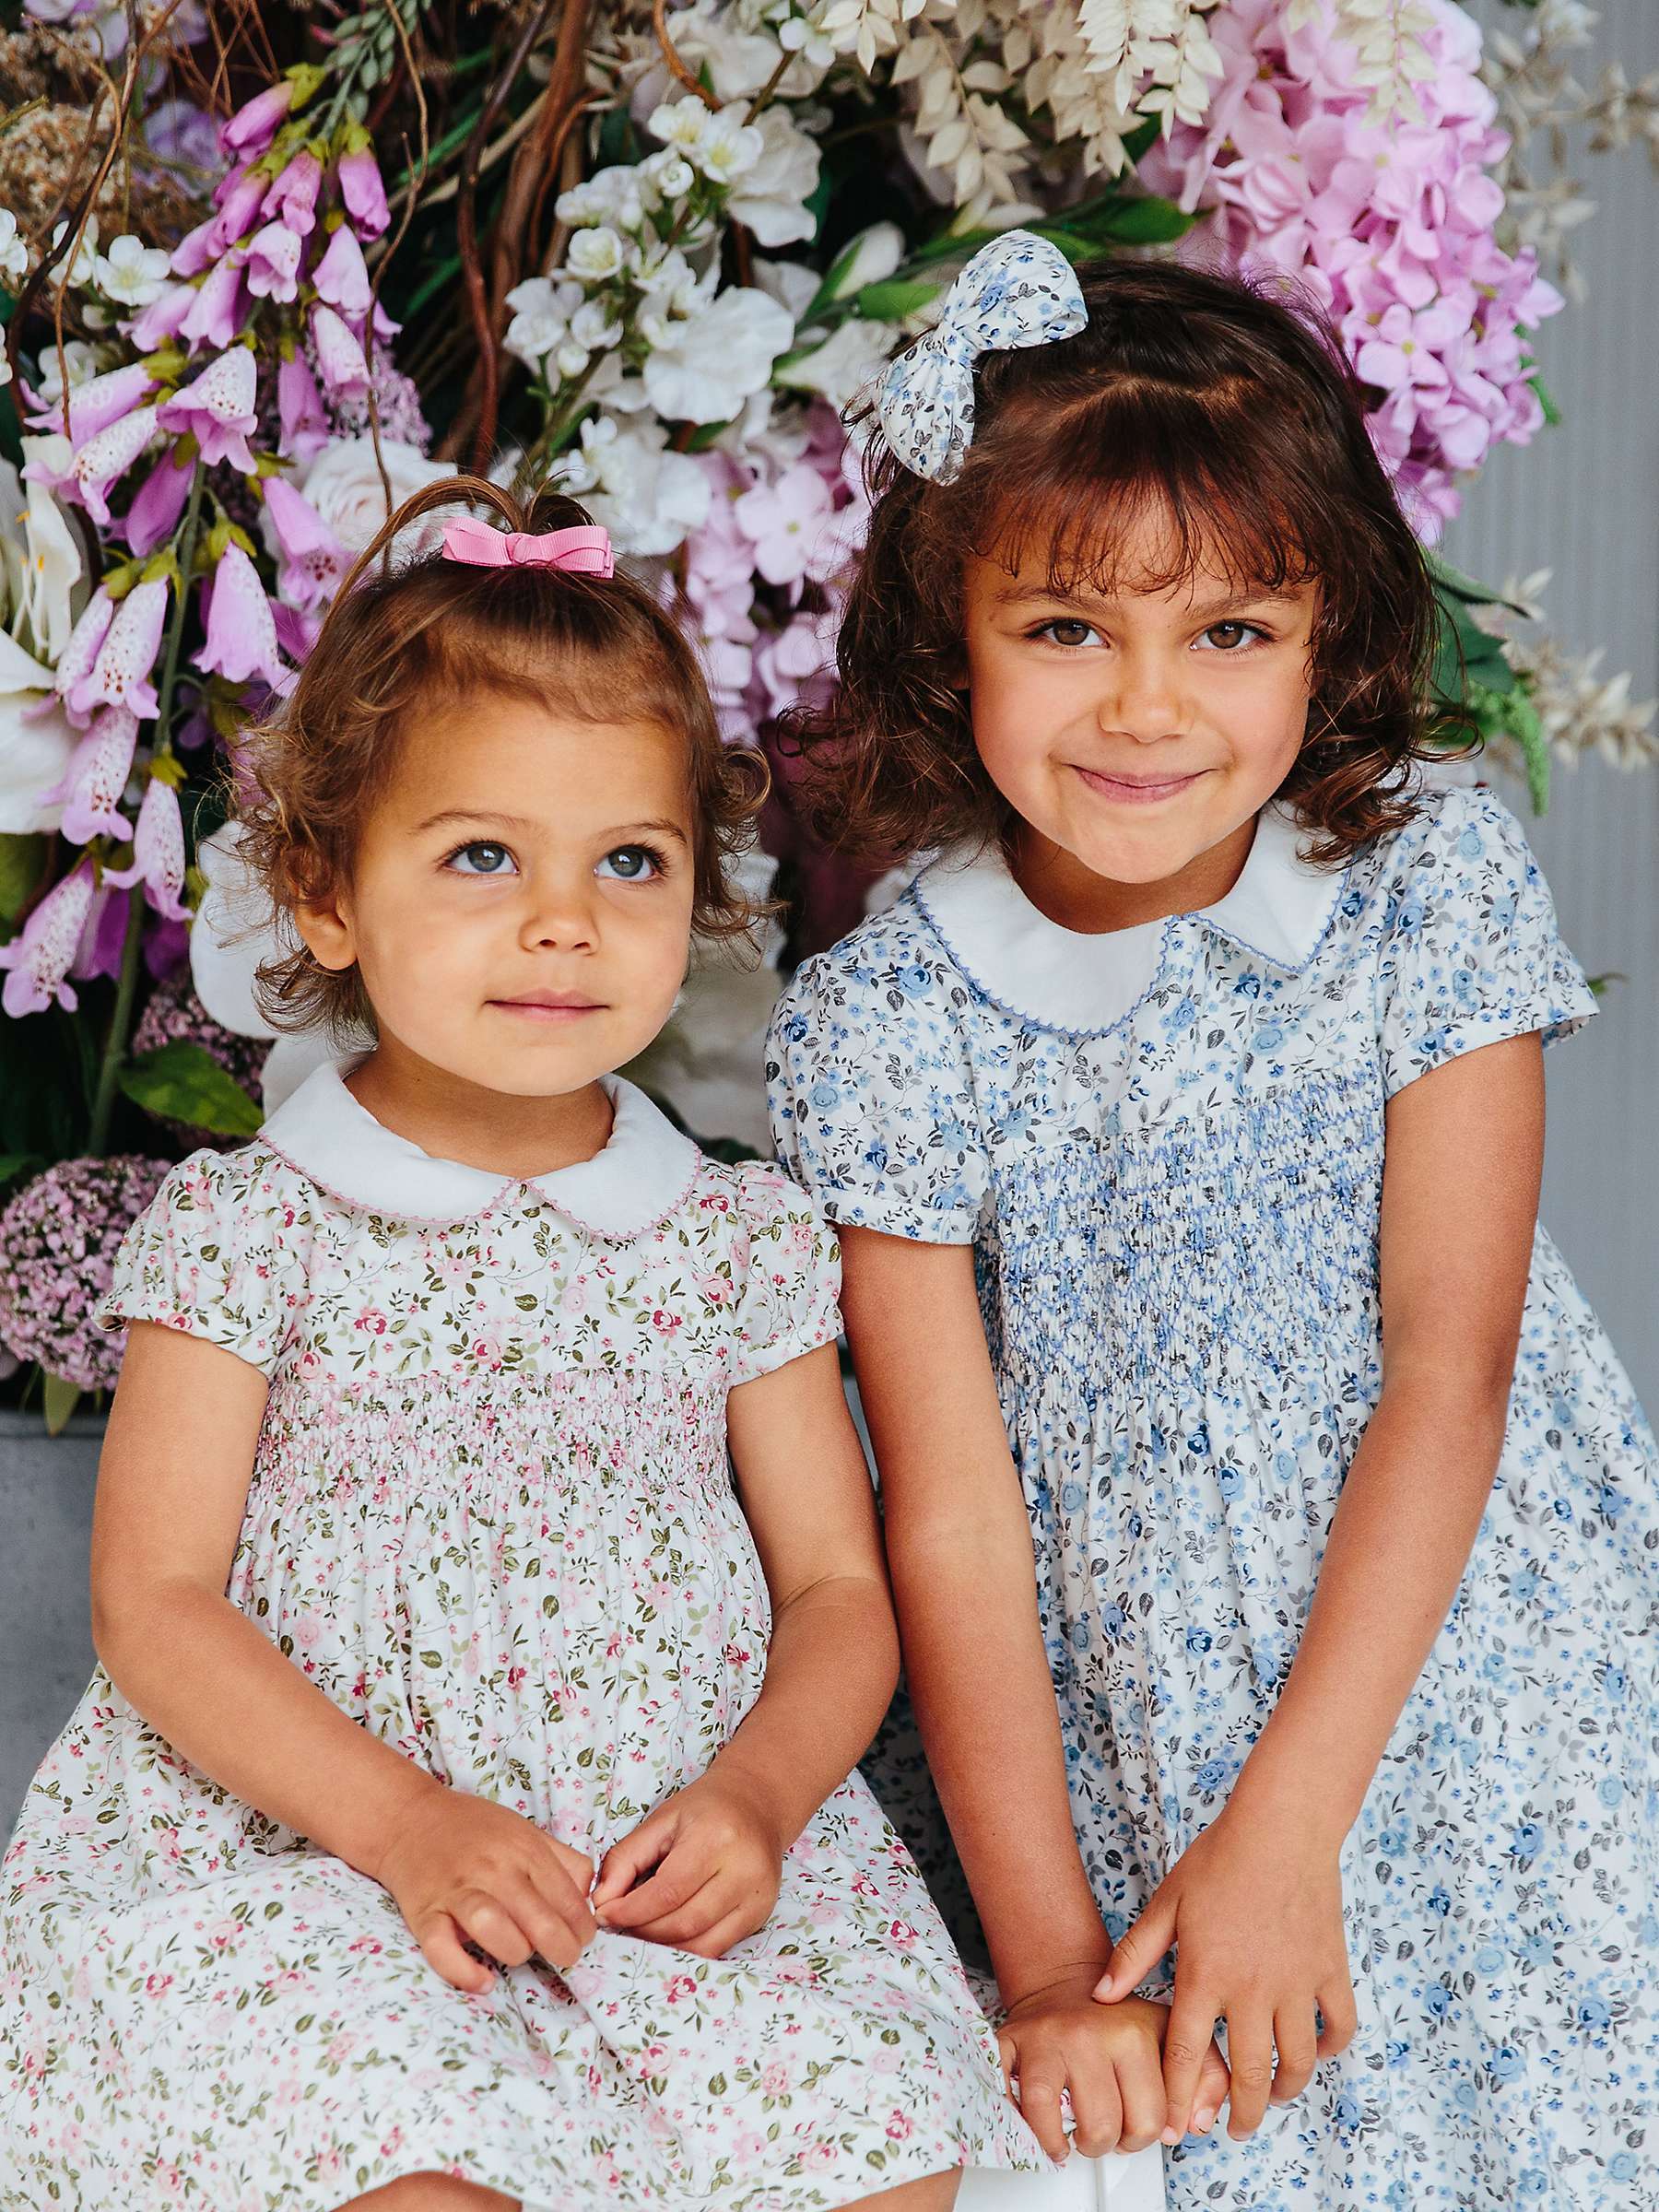 Buy Trotters Confiture Baby Arabella Smocked Floral Dress Online at johnlewis.com